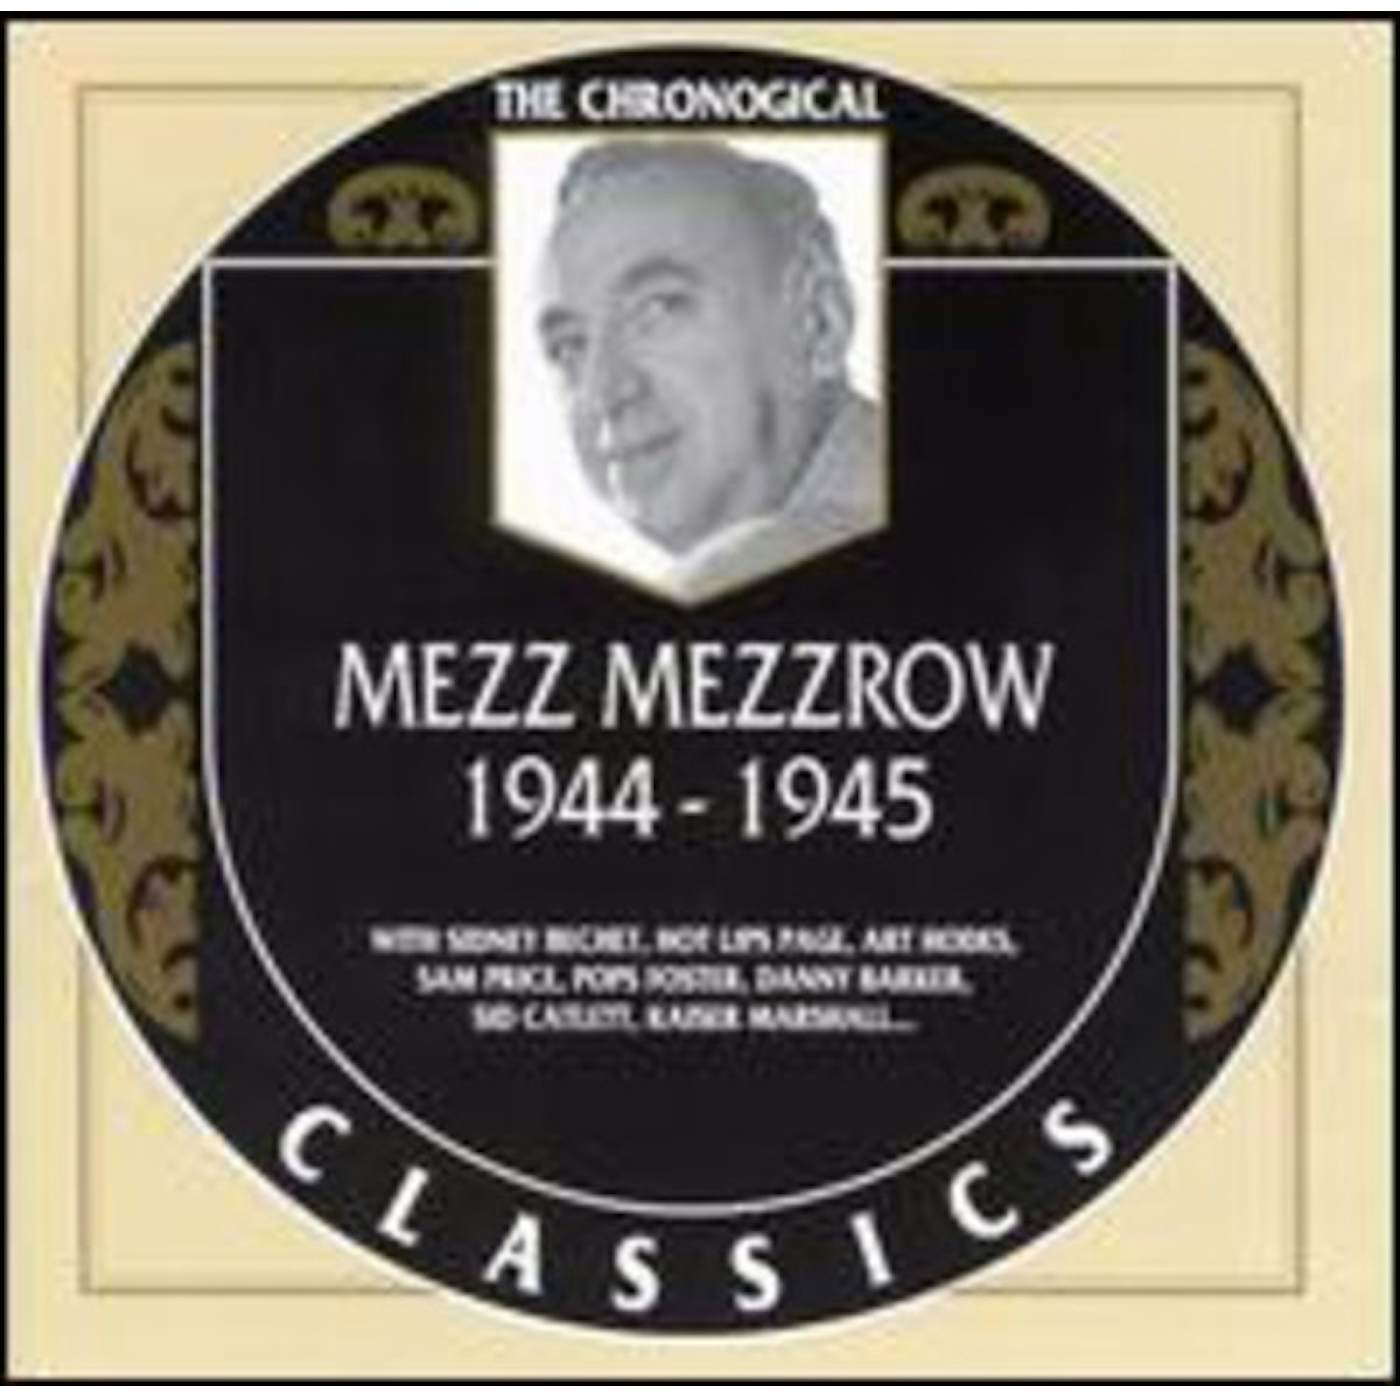 Mezz Mezzrow 1944-45 CD